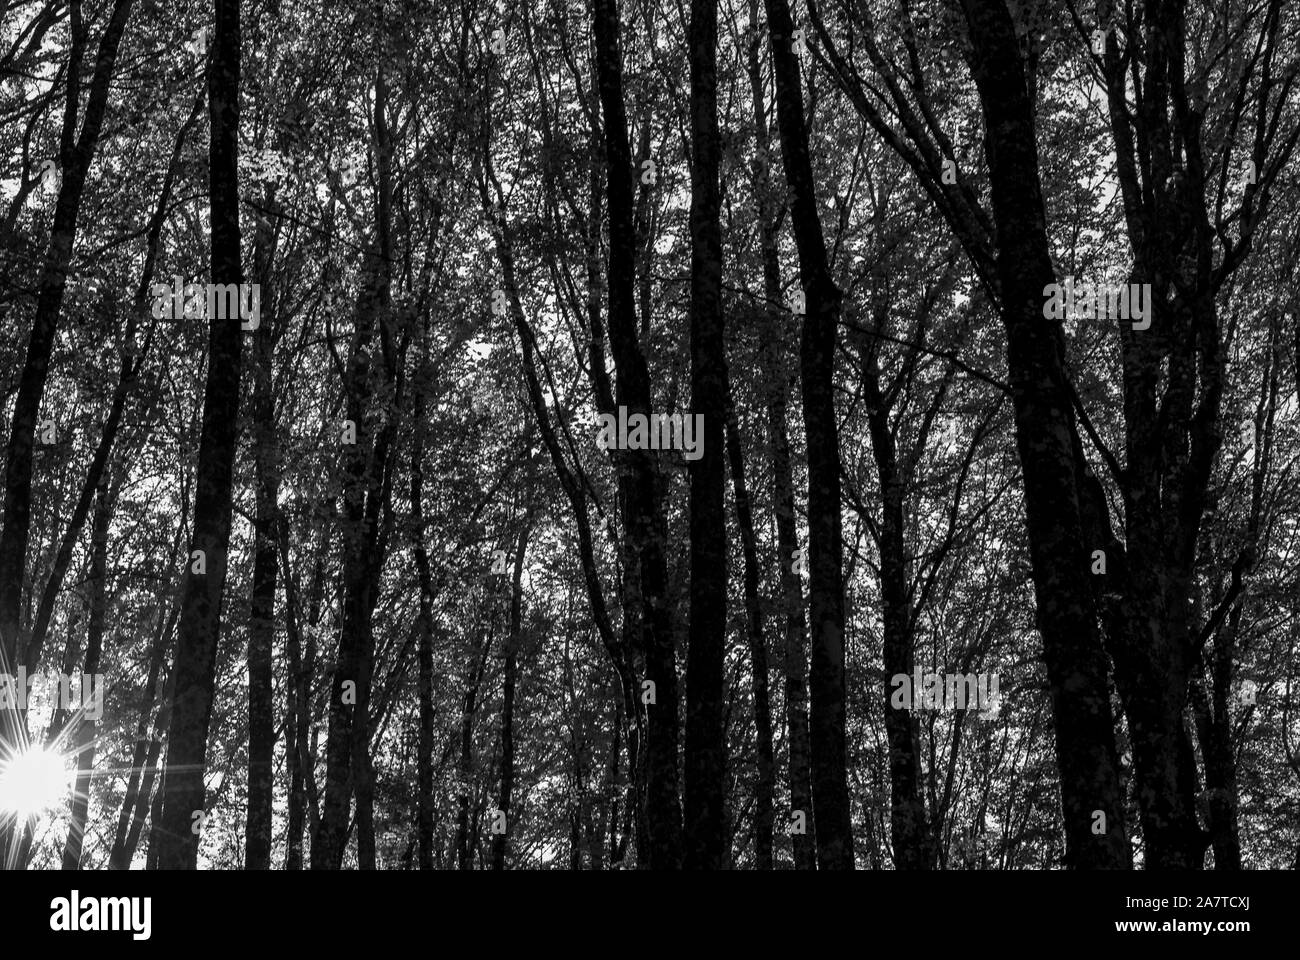 Fotografia di una foresta di faggio, presi in bianco e nero, con una silhouette di trunk Foto Stock